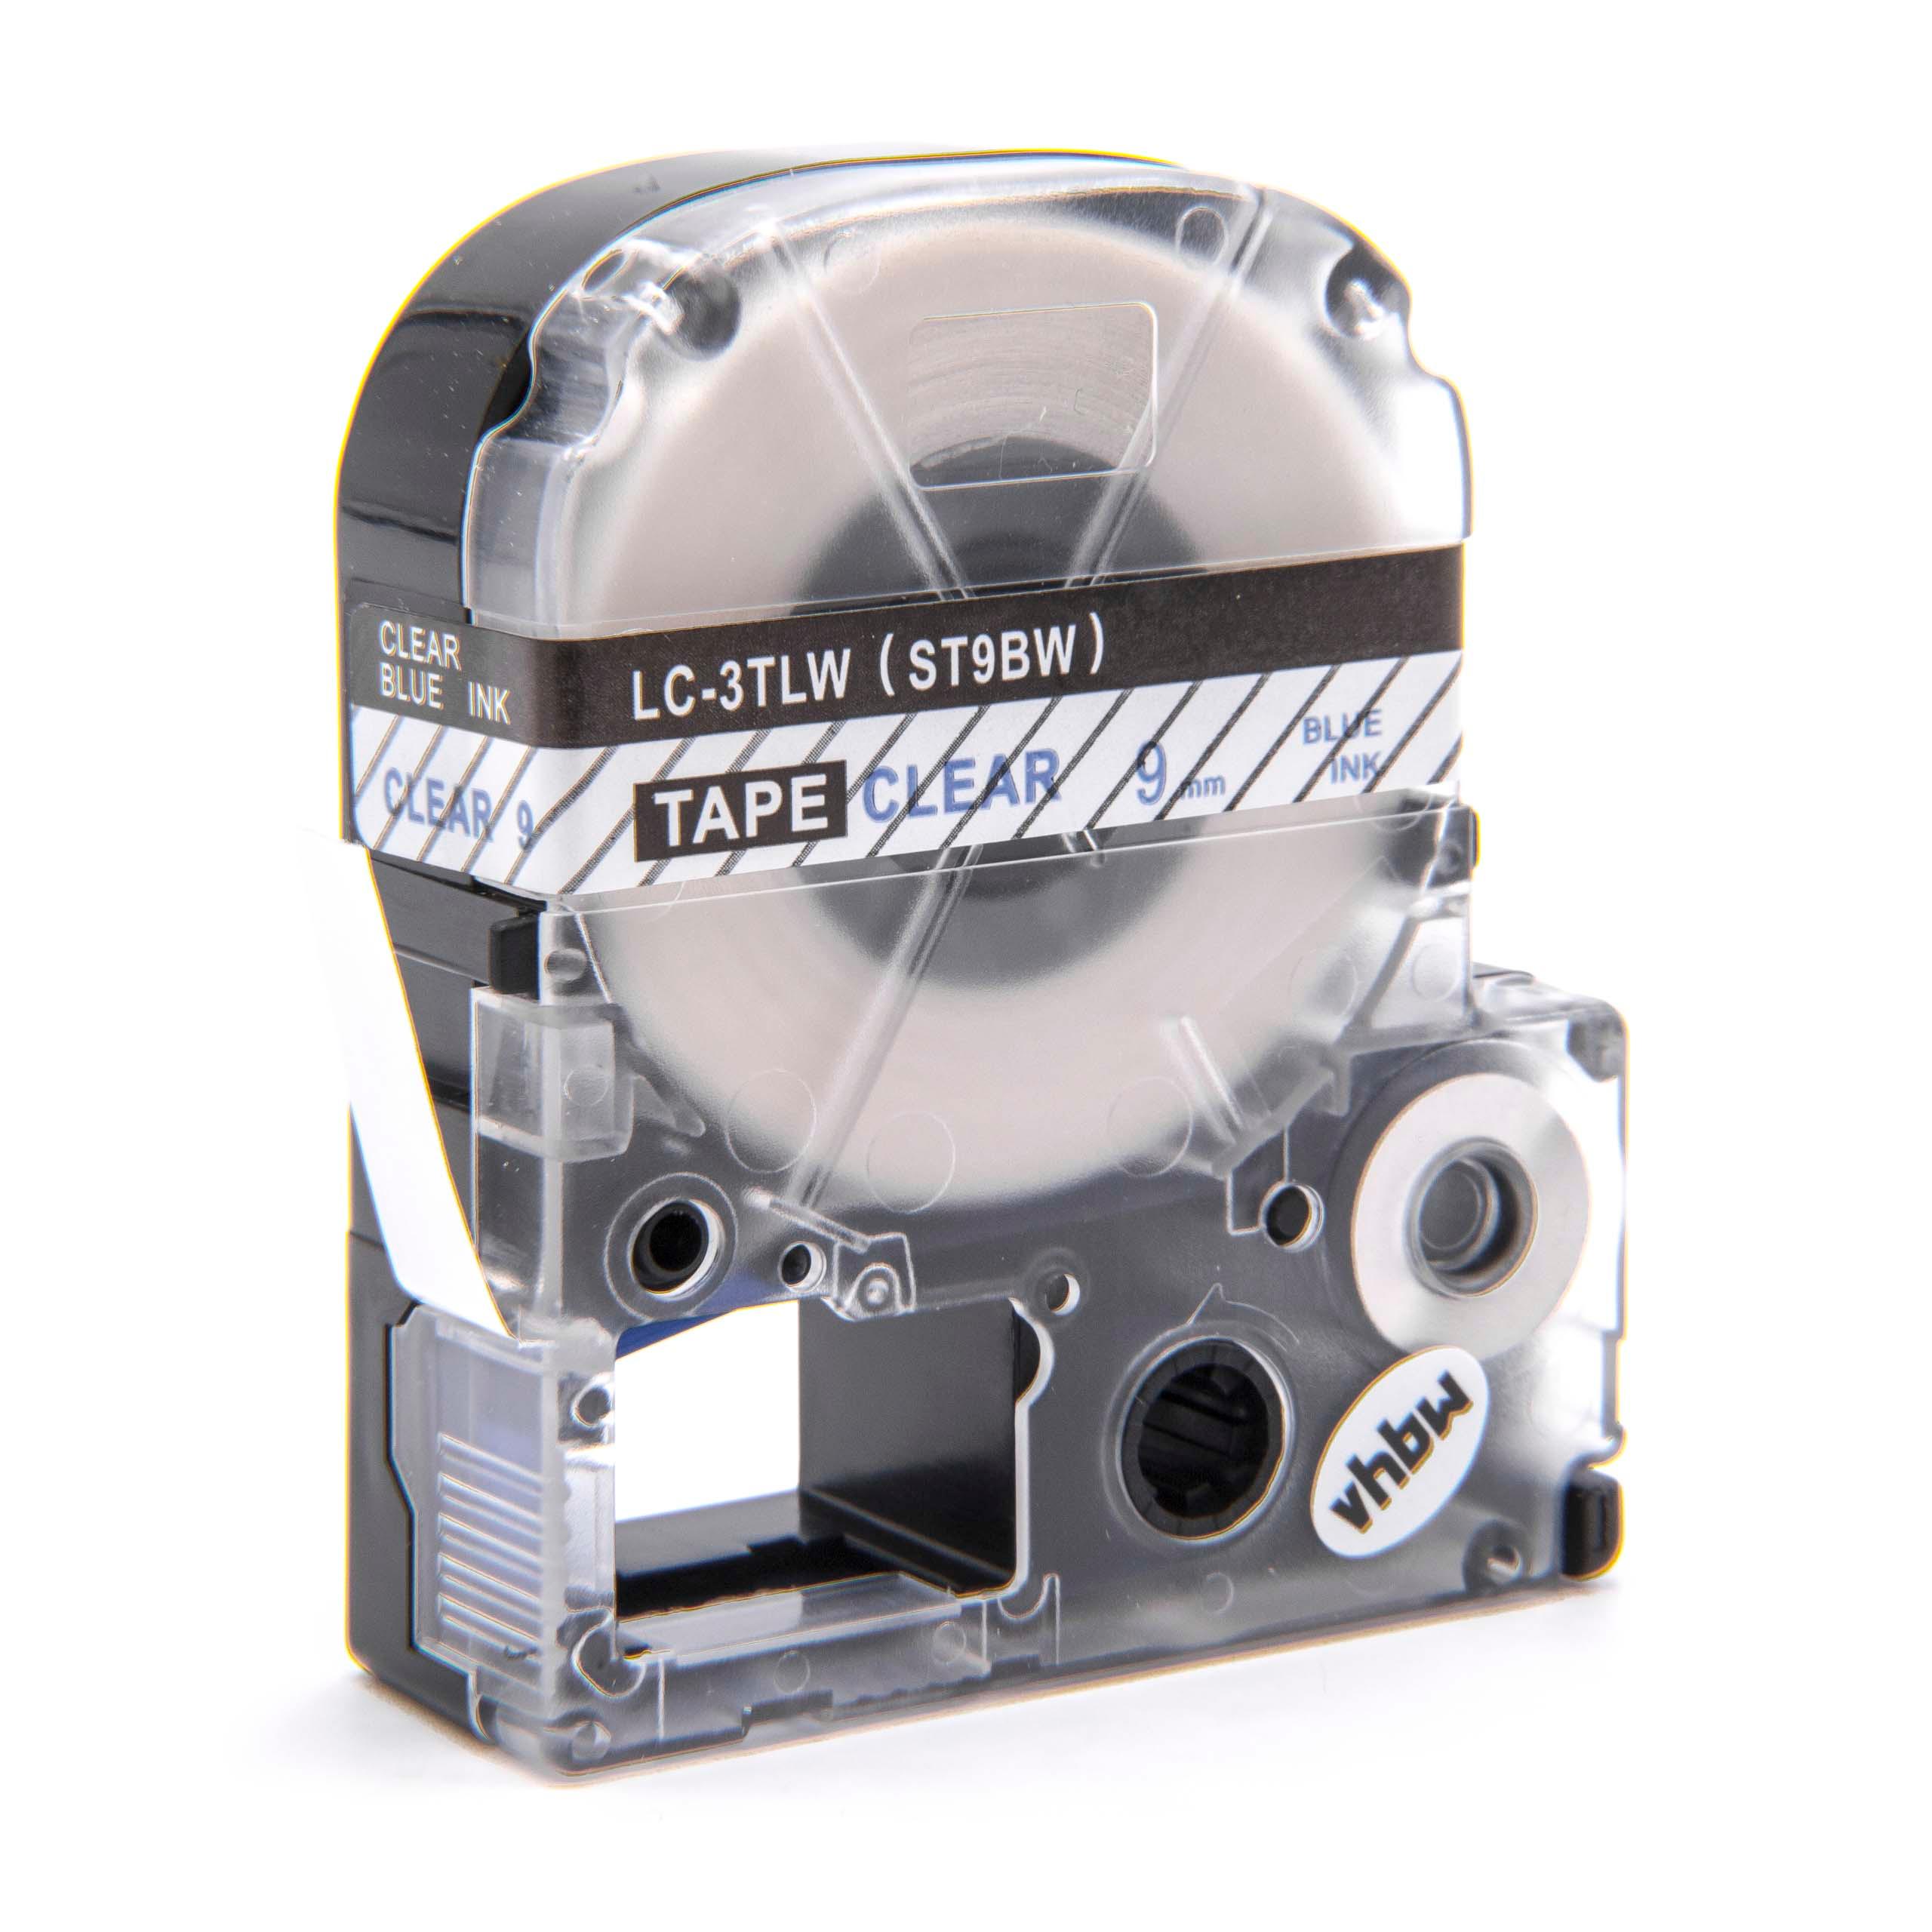 Casete cinta escritura reemplaza Epson LC-3TLW Azul su Transparente